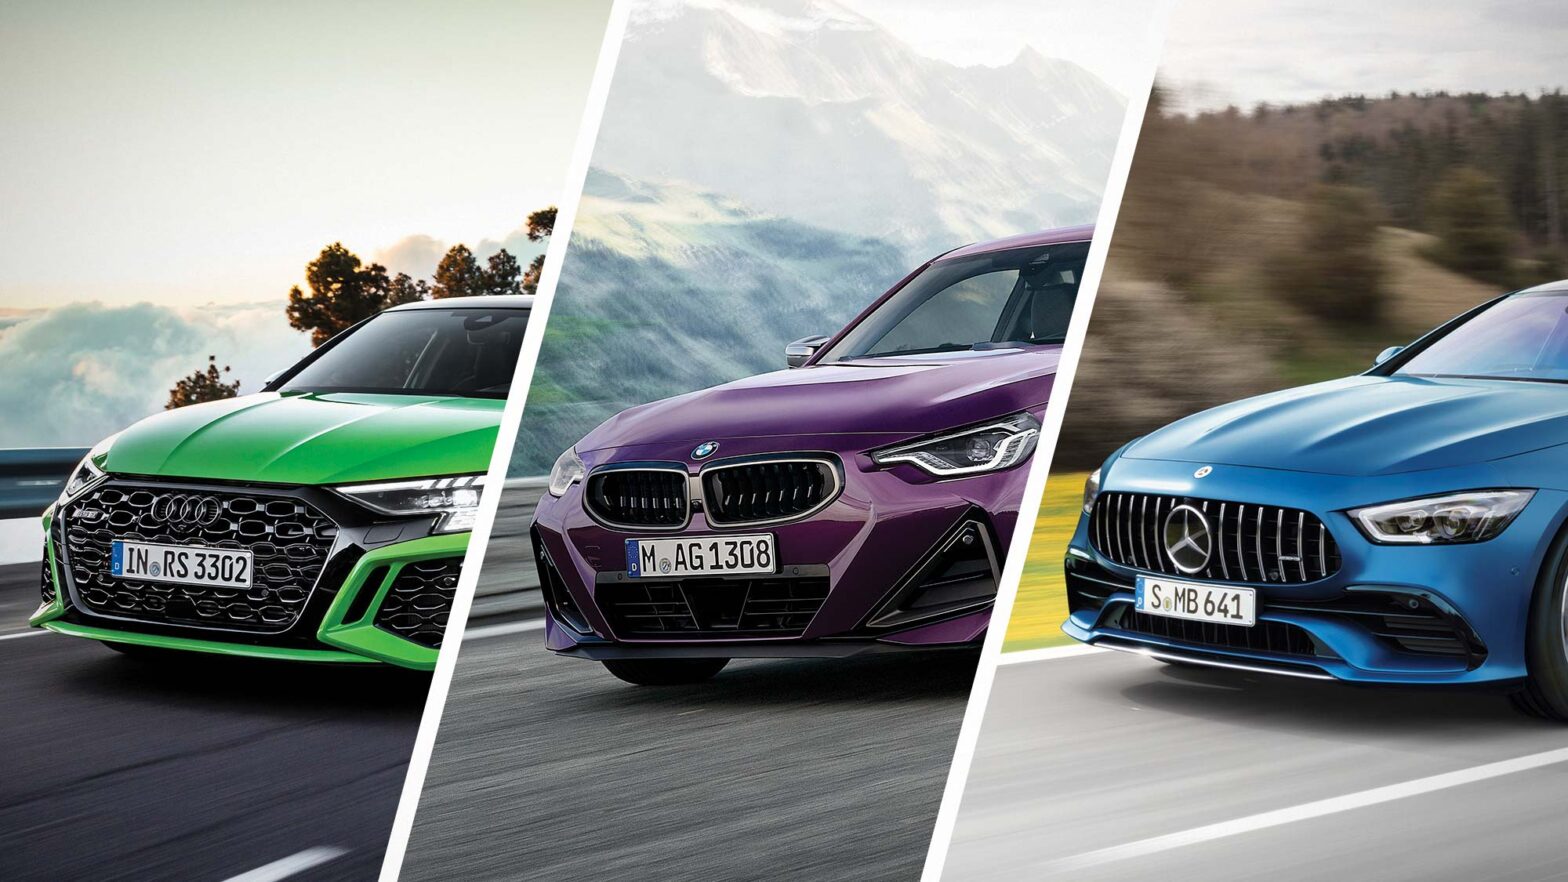 Choosing-Between-BMW-vs-Audi-vs-Mercedes-Featured-image-1568x882-1.jpg